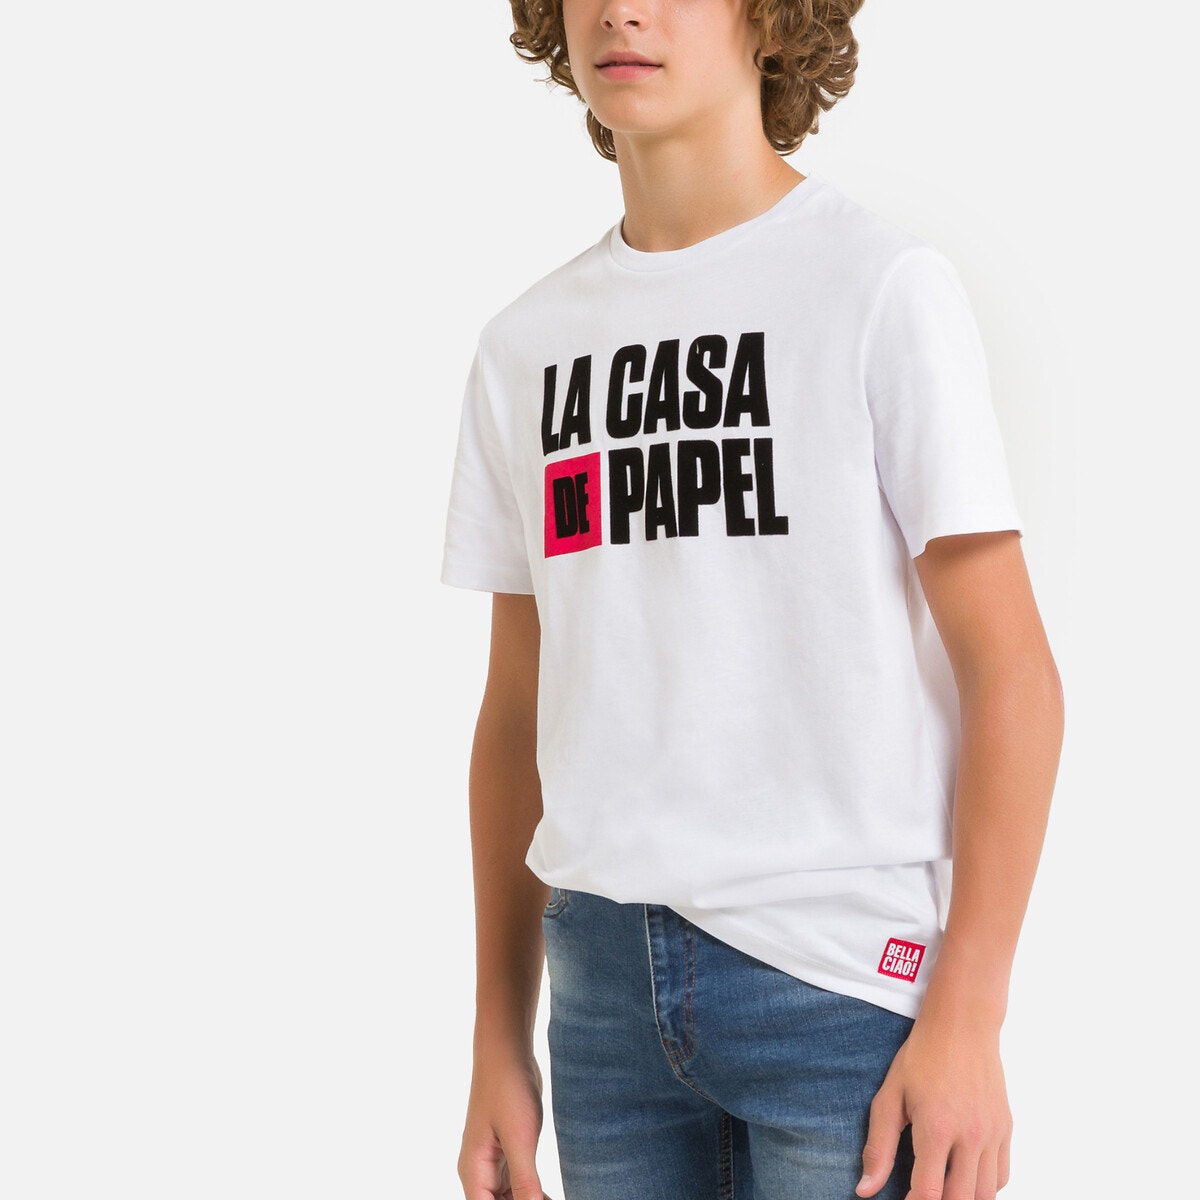 ΠΑΙΔΙ | Μπλούζες & Πουκάμισα | T-shirts Κοντομάνικο T-shirt, 12-18 ετών